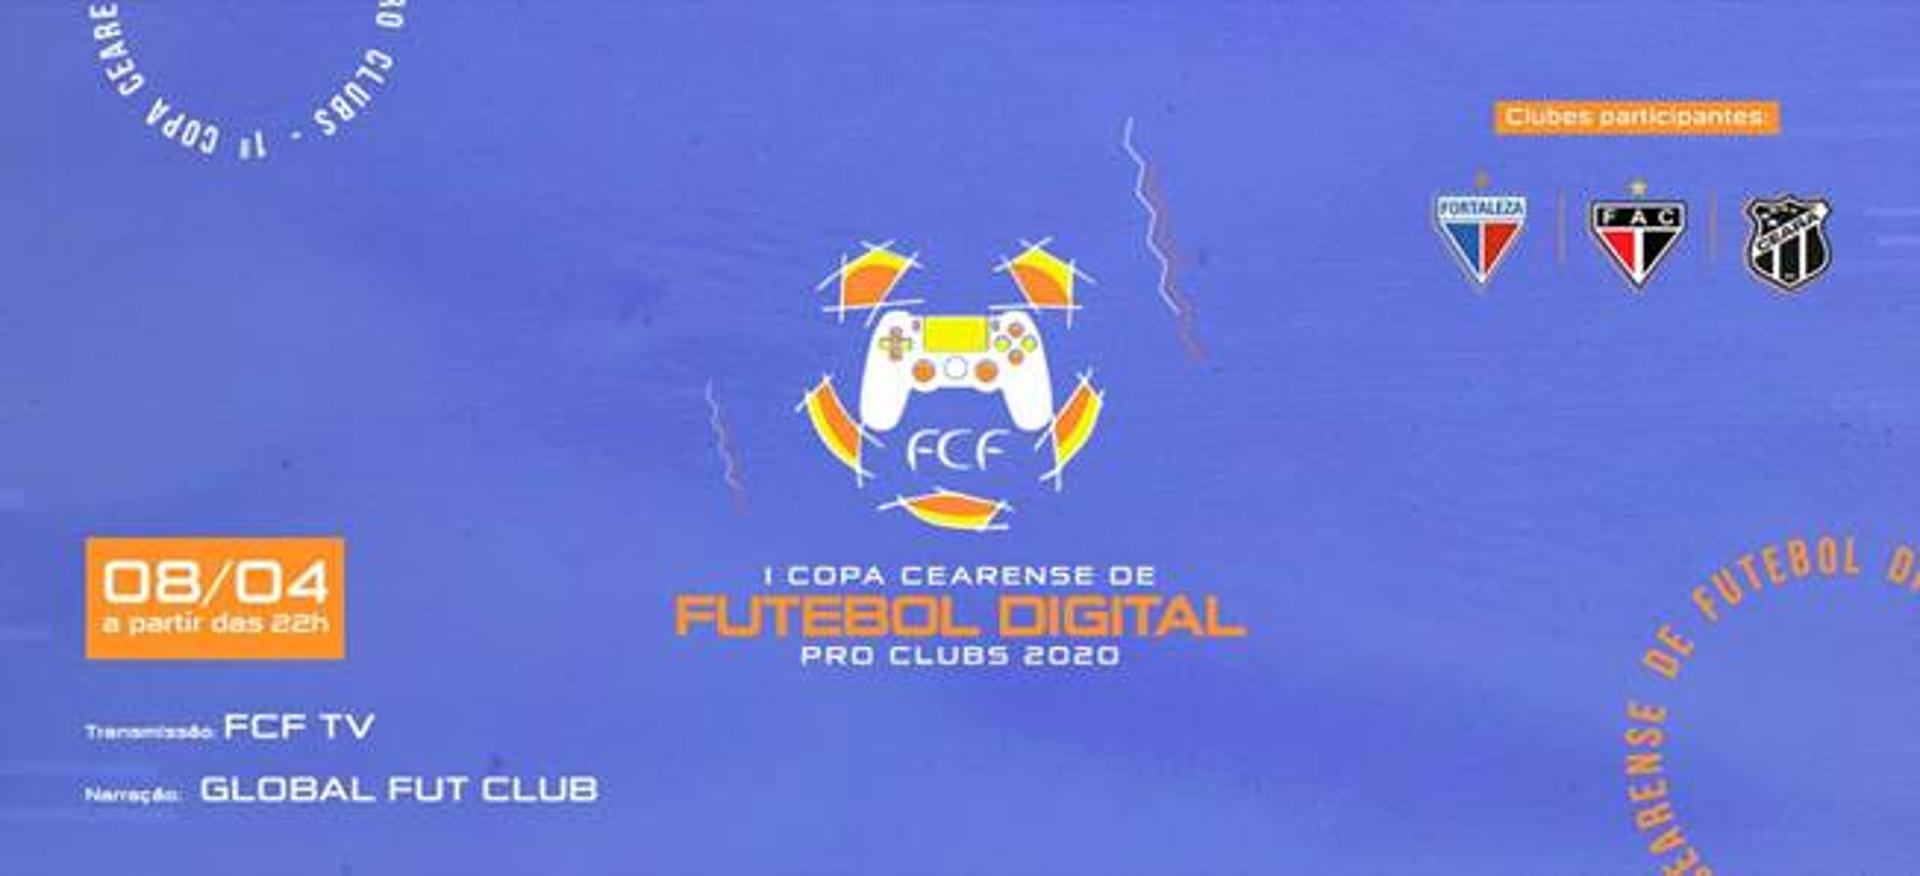 Copa Cearense de Futebol Digital Pro Clubs 2020